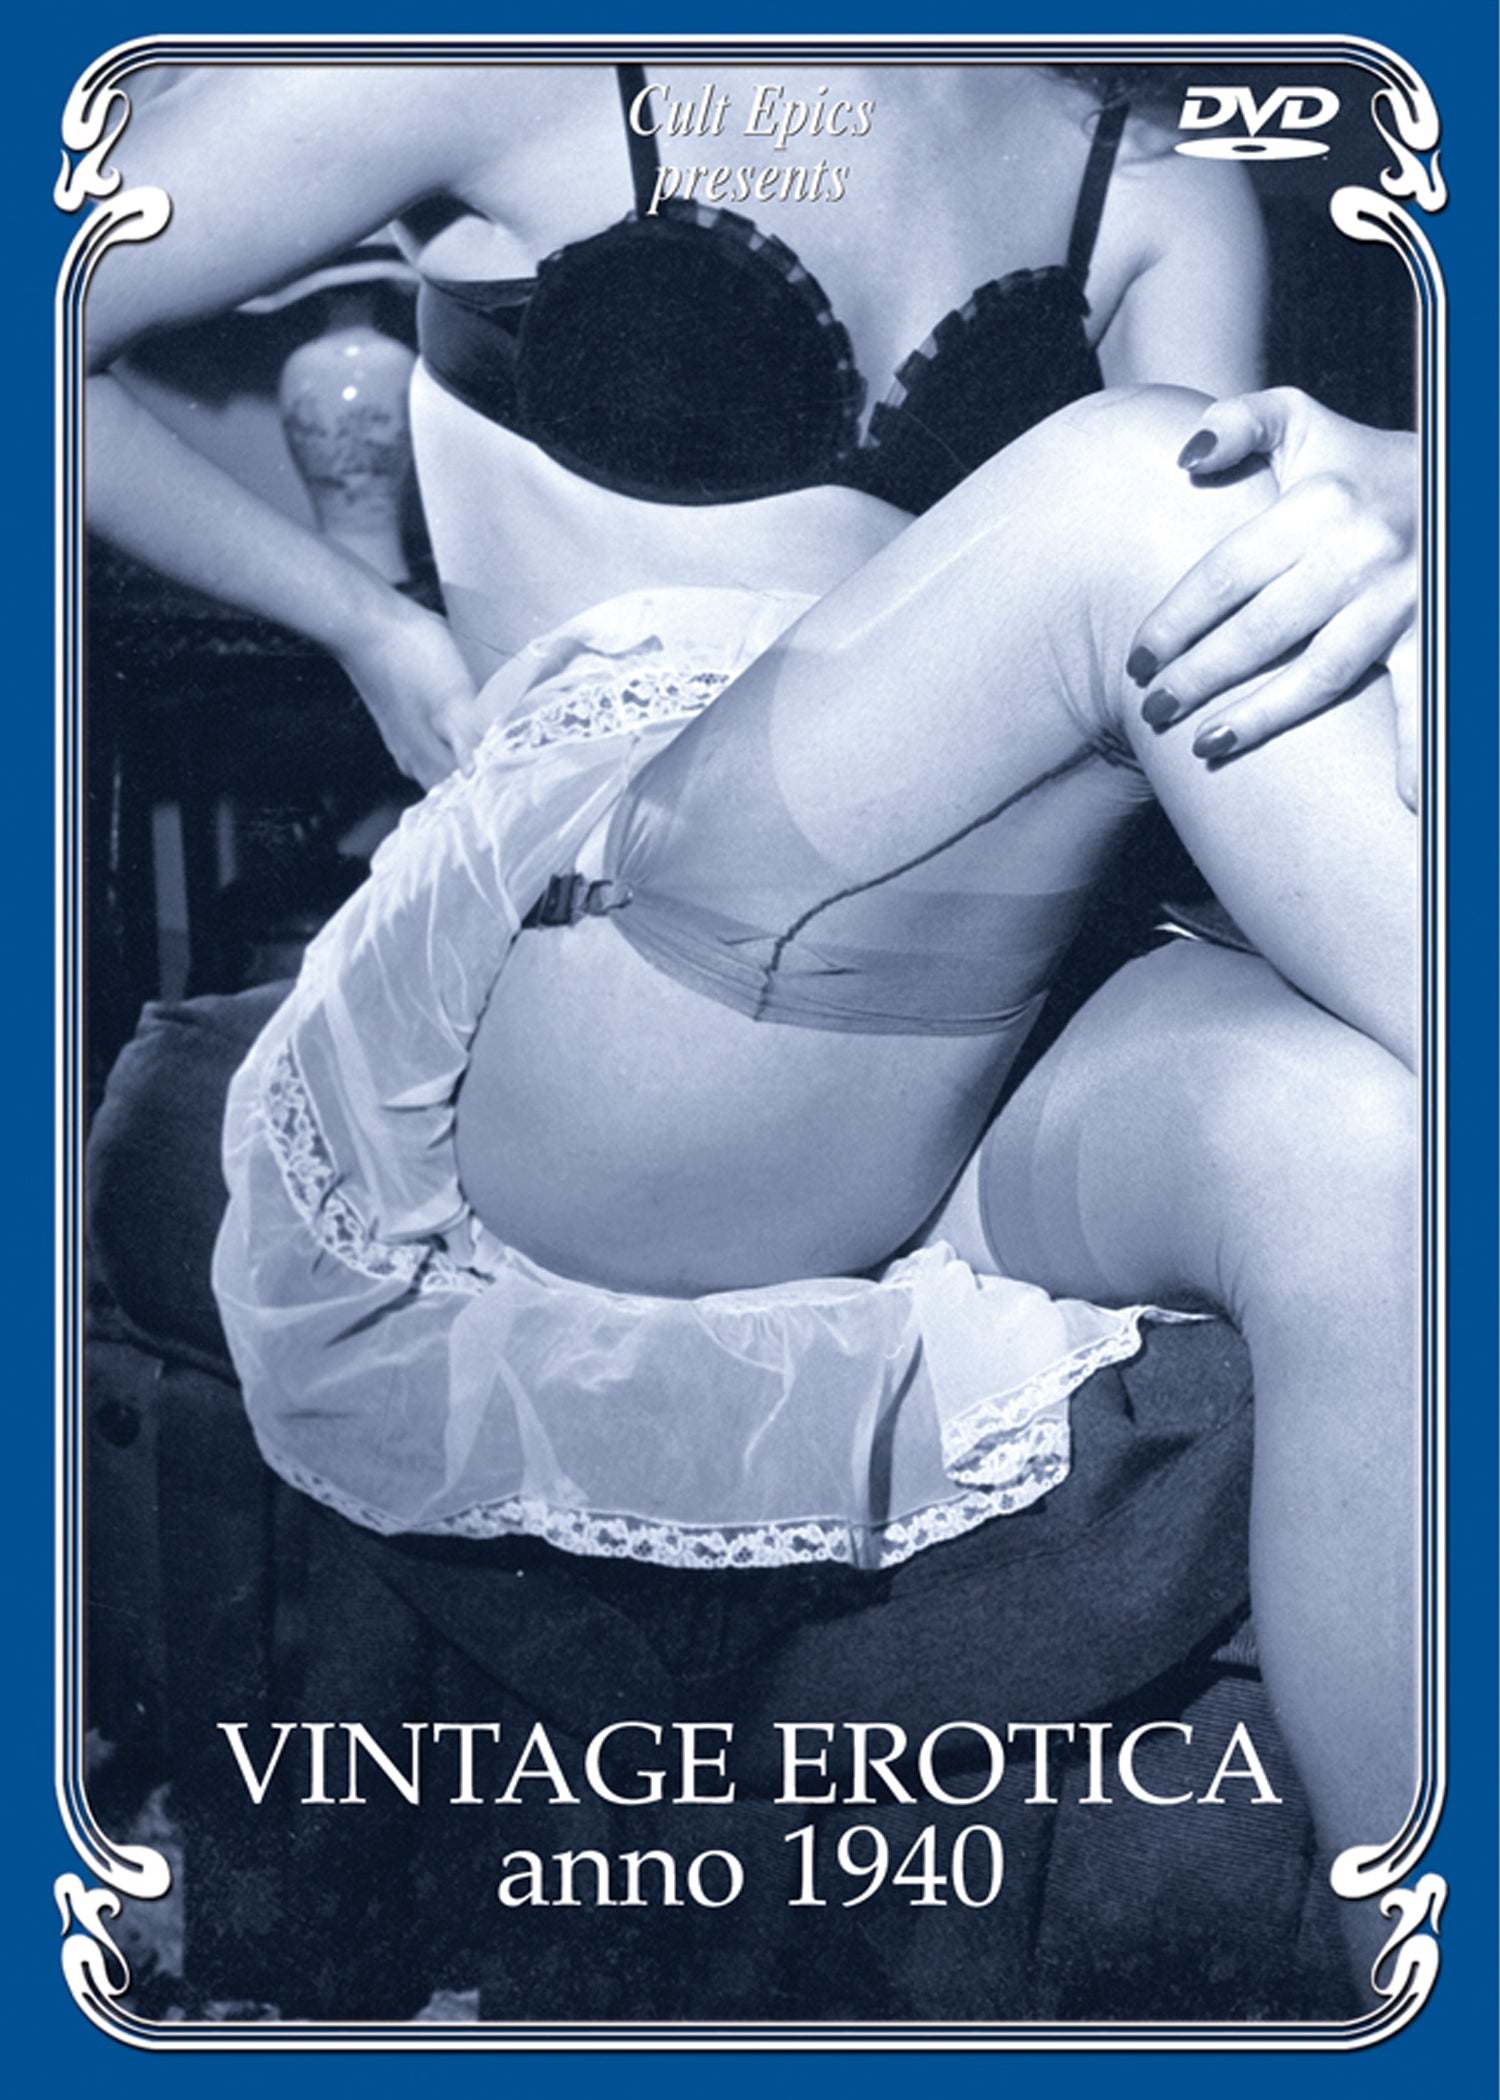 VINTAGE EROTICA ANNO 1940 DVD